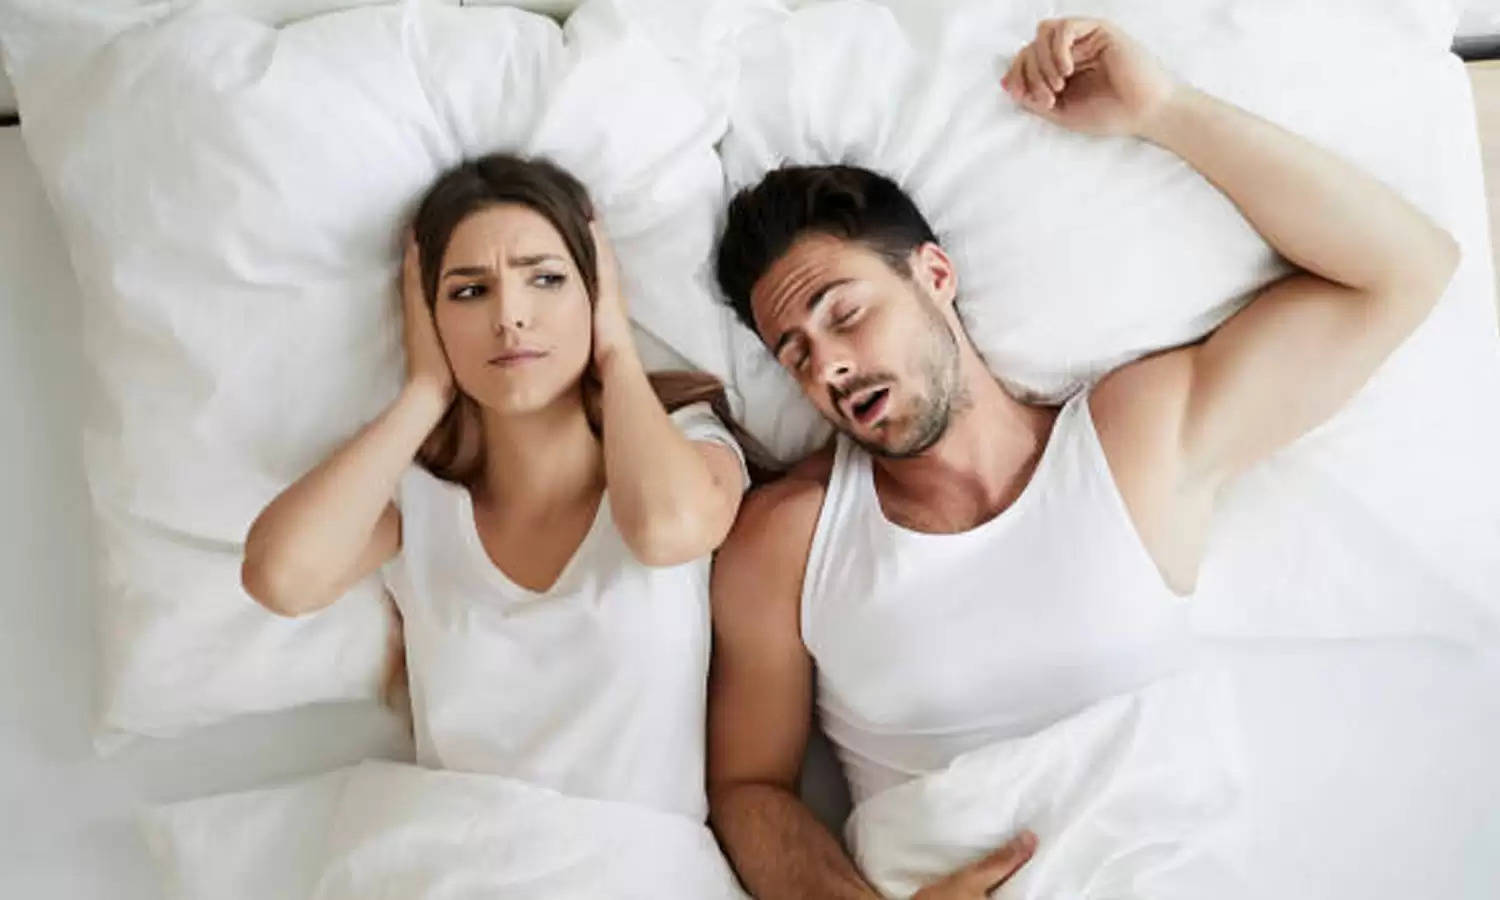 रात को नहीं आती है आपको नींद? तो अभी तुरंत लाएं ये 2,212 रुपये वाला Smart Bed! पति के खर्राटों से भी मिलेगा छुटकारा